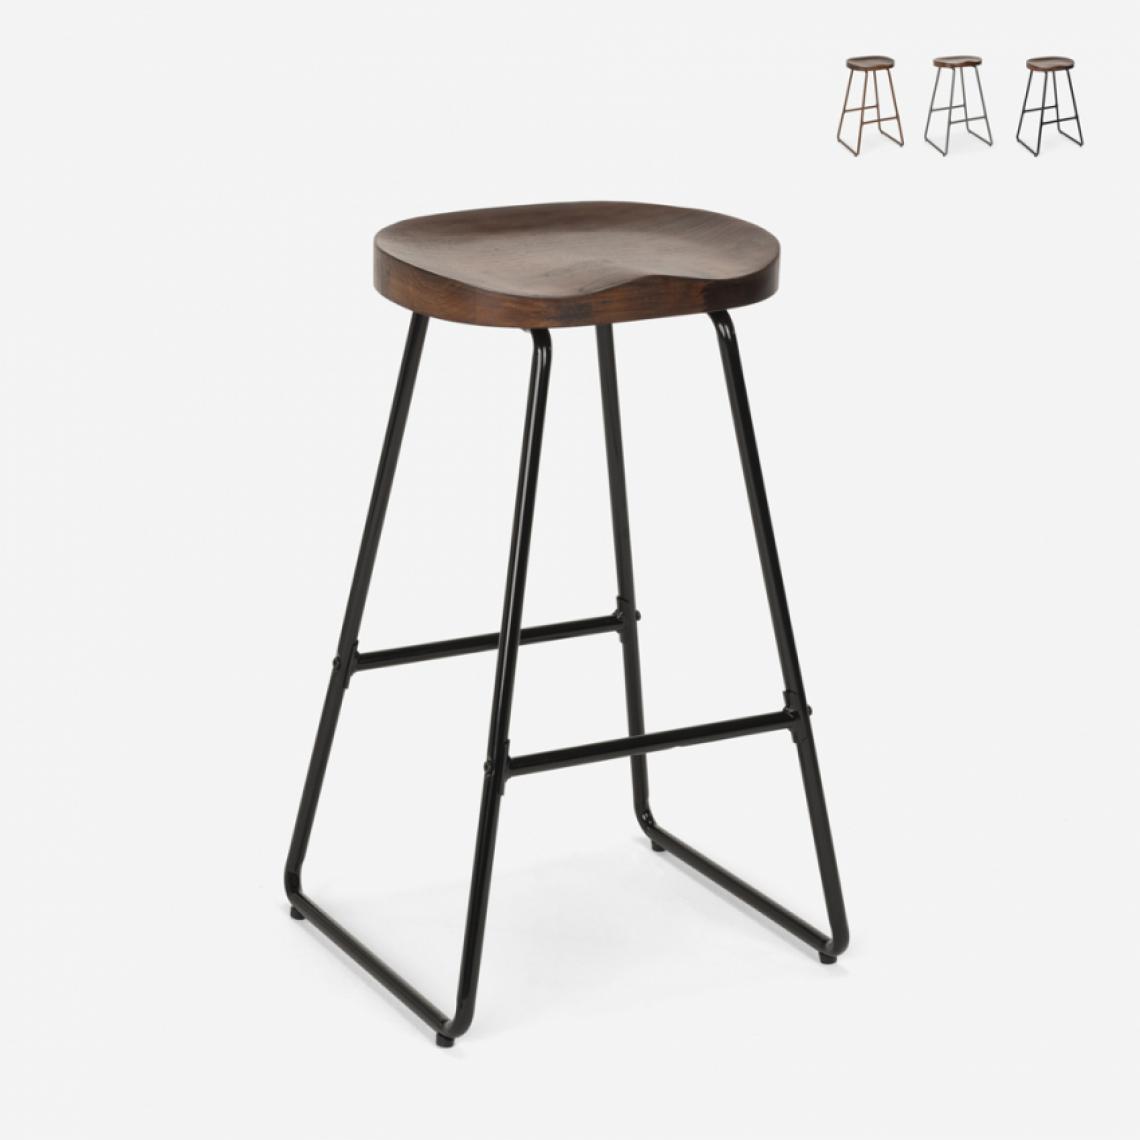 Ahd Amazing Home Design - Tabouret design industriel en métal et bois pour cuisines bars restaurants Carbon, Couleur: Noir - Tabourets